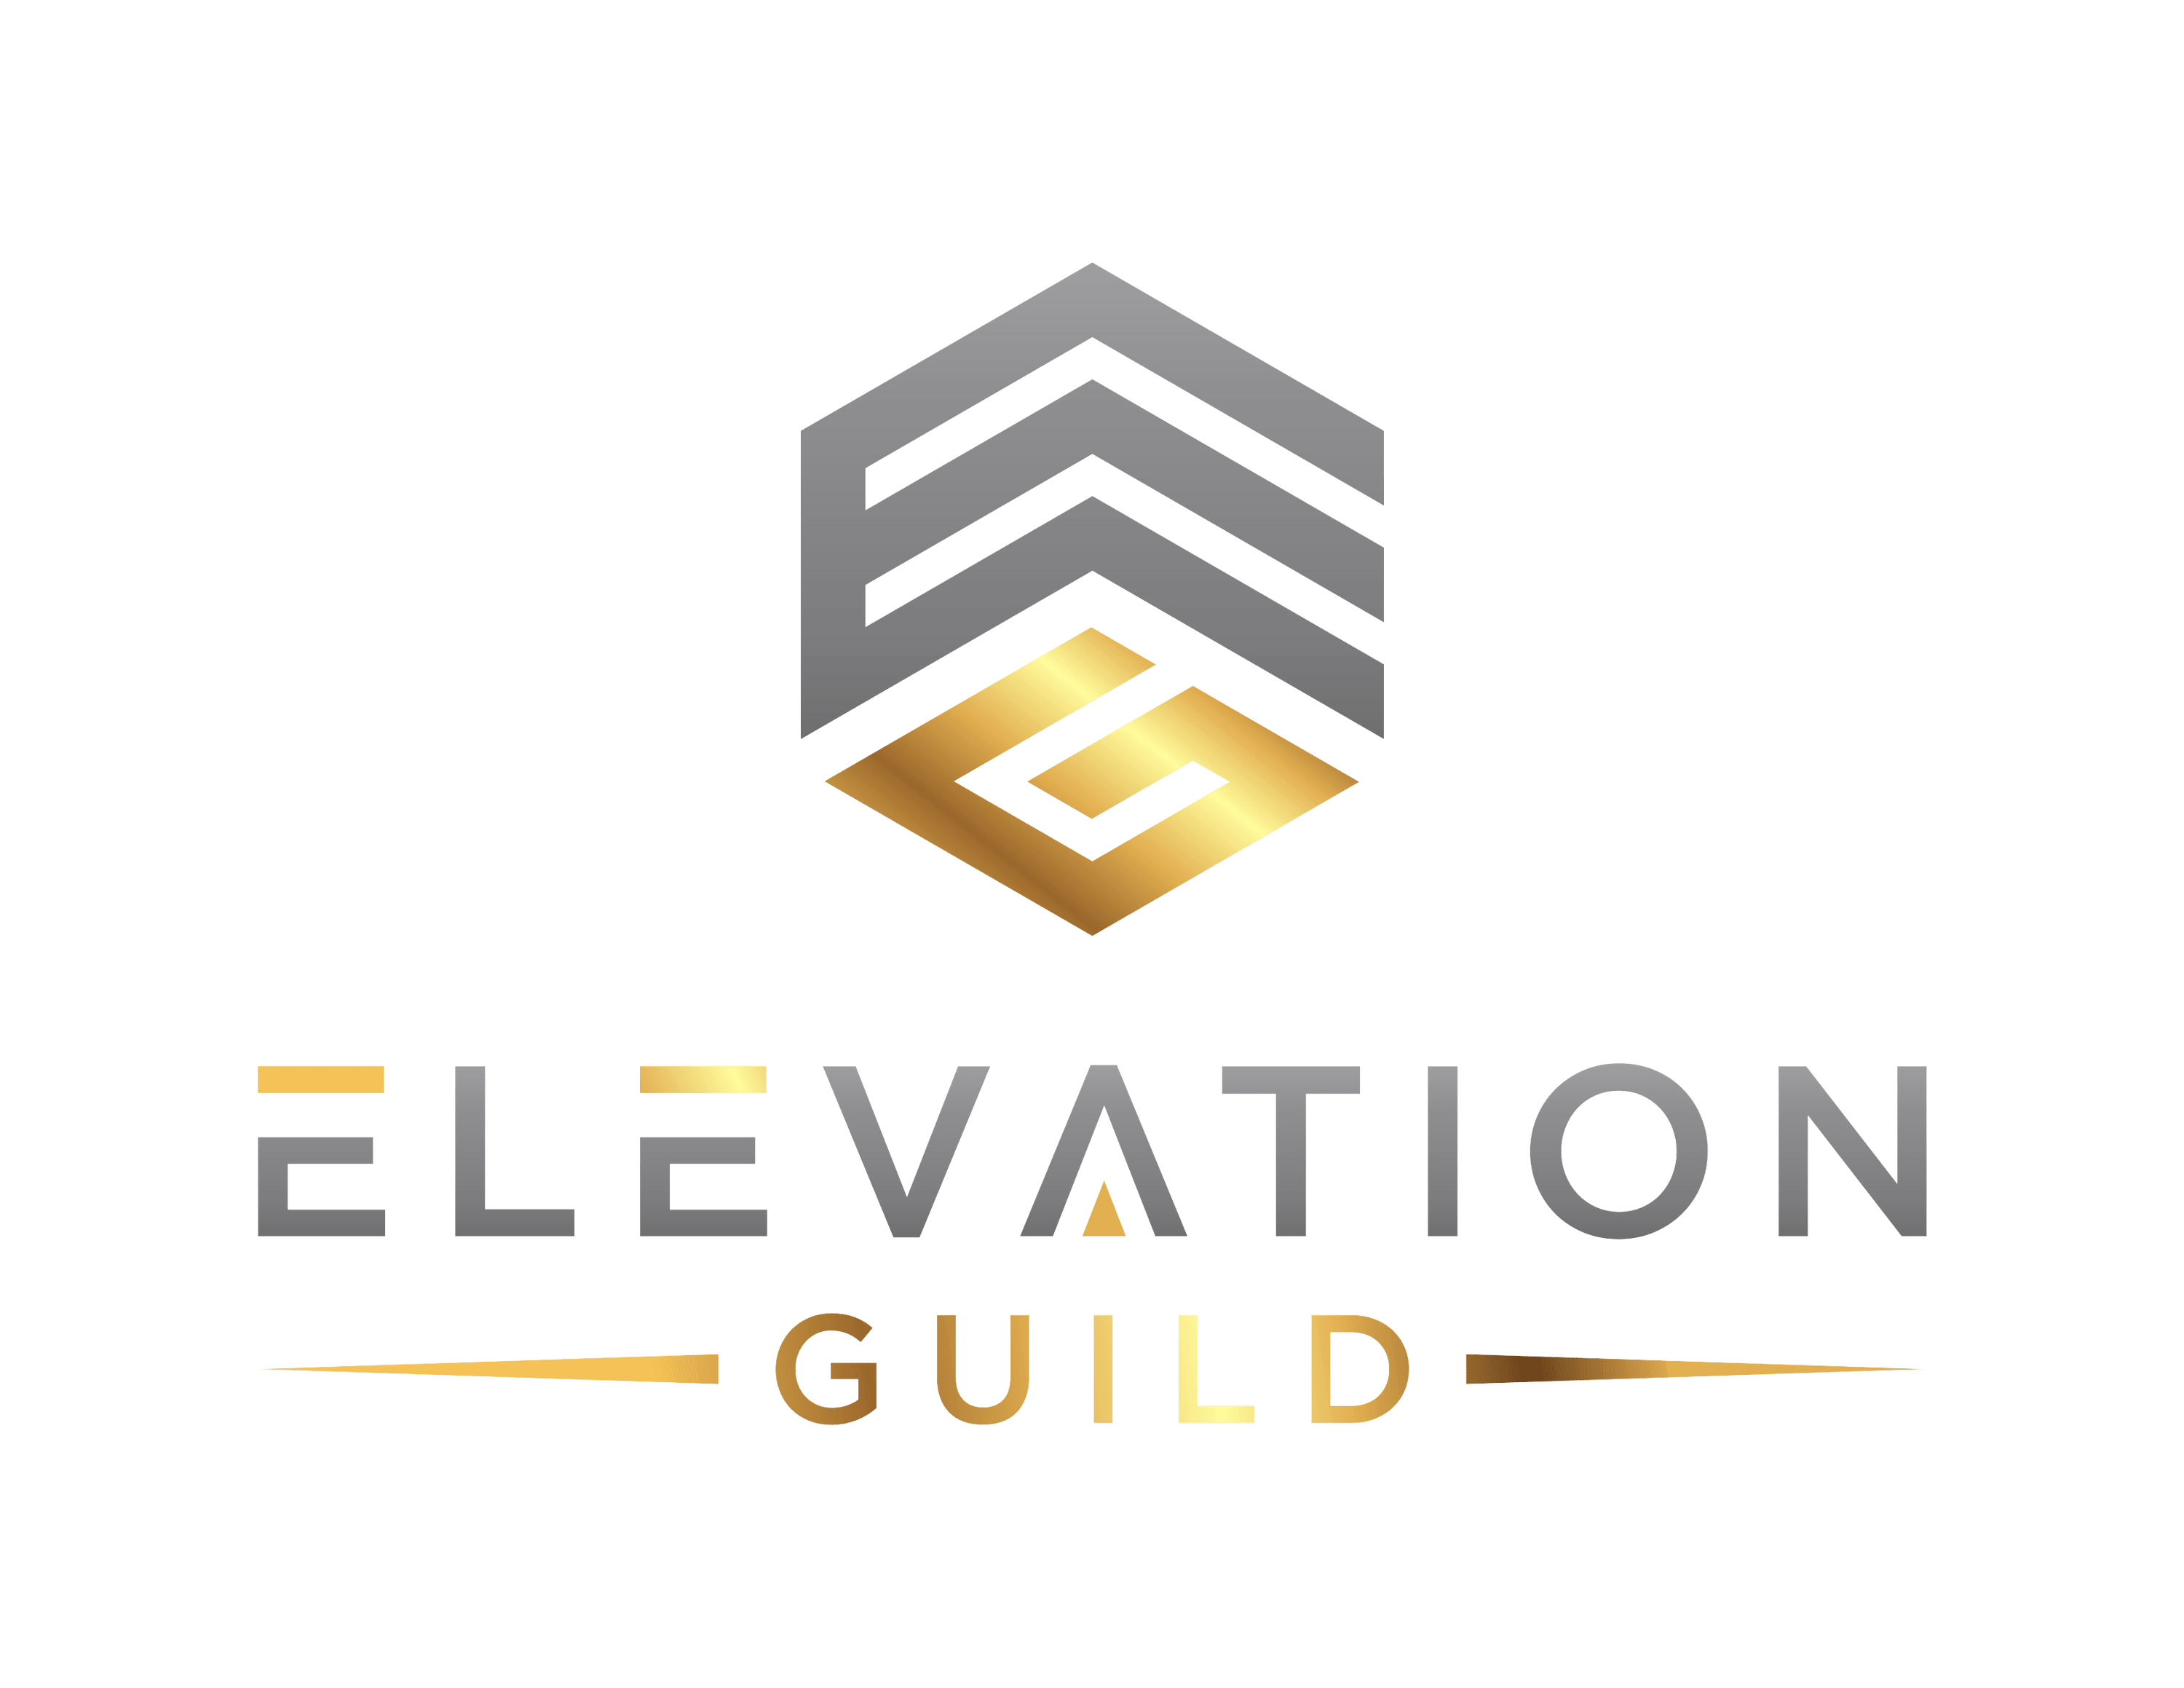 Elevation Guild